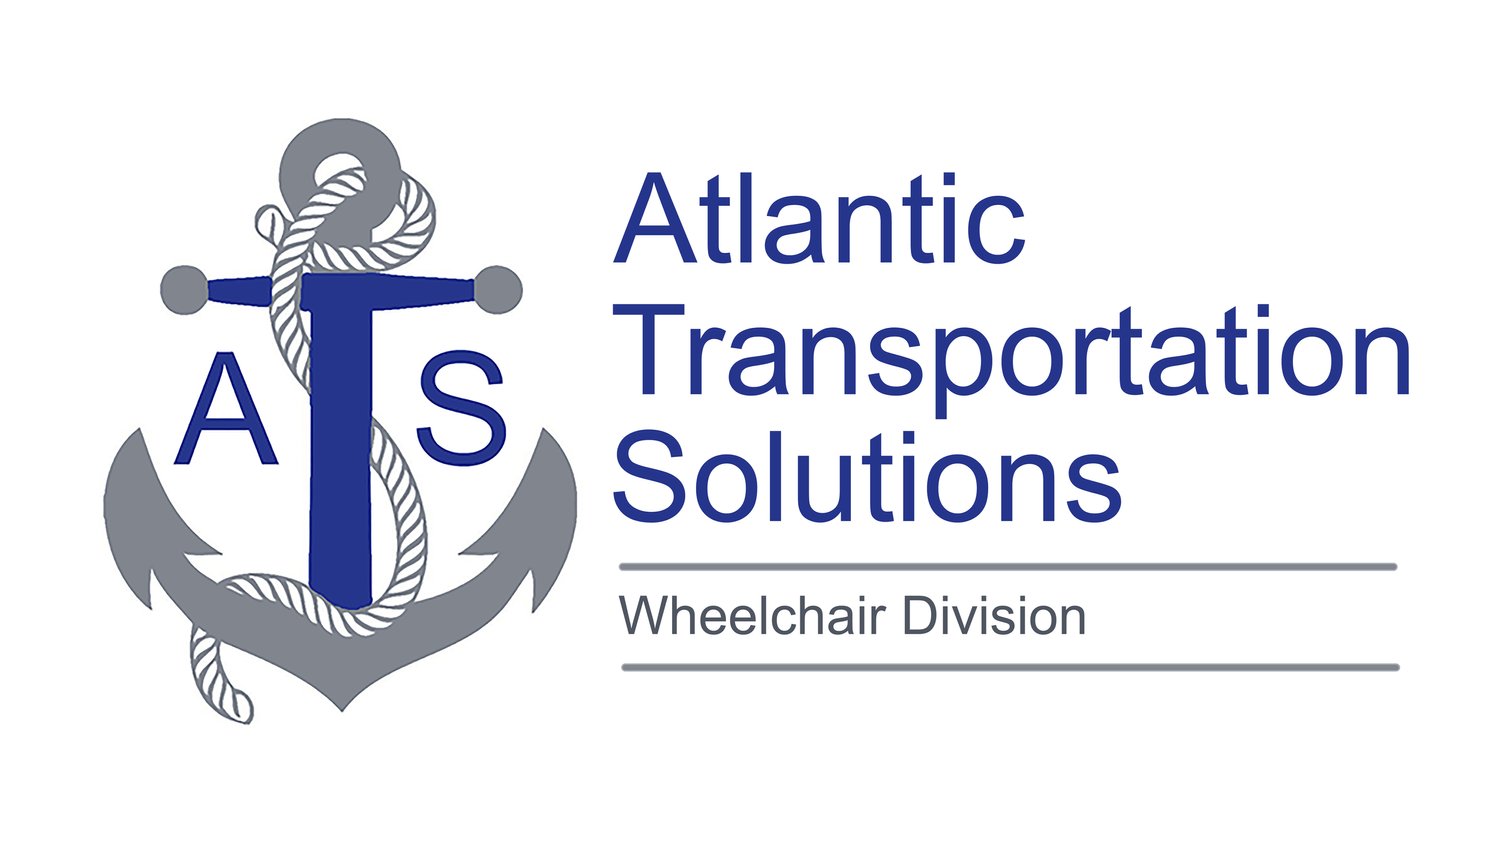 Atlantic Transportation Solutions